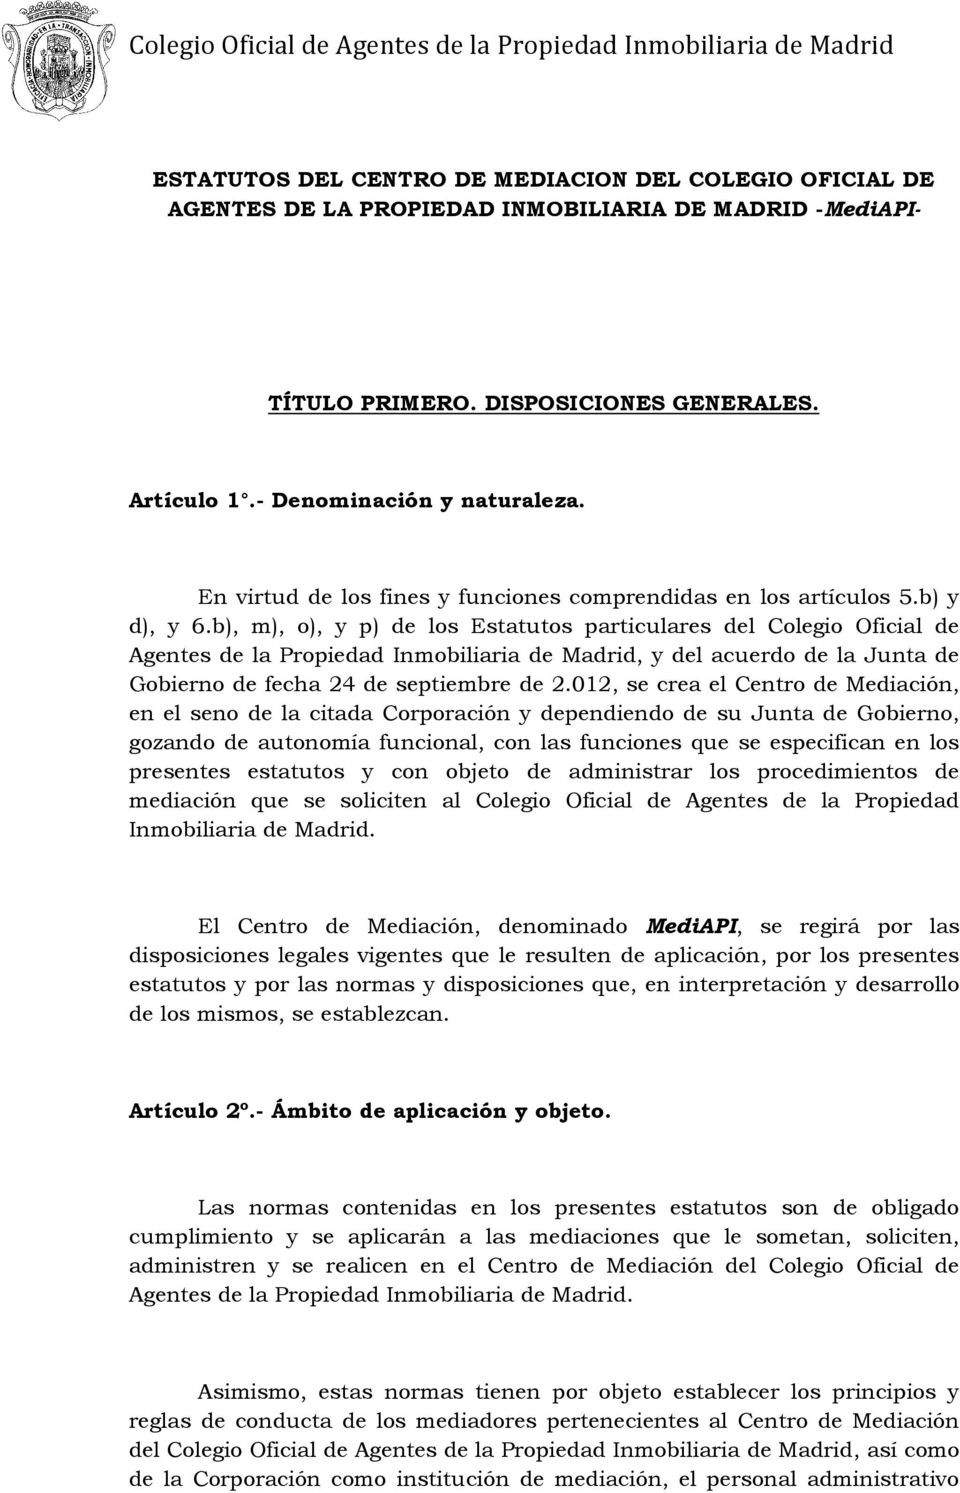 b), m), o), y p) de los Estatutos particulares del Colegio Oficial de Agentes de la Propiedad Inmobiliaria de Madrid, y del acuerdo de la Junta de Gobierno de fecha 24 de septiembre de 2.